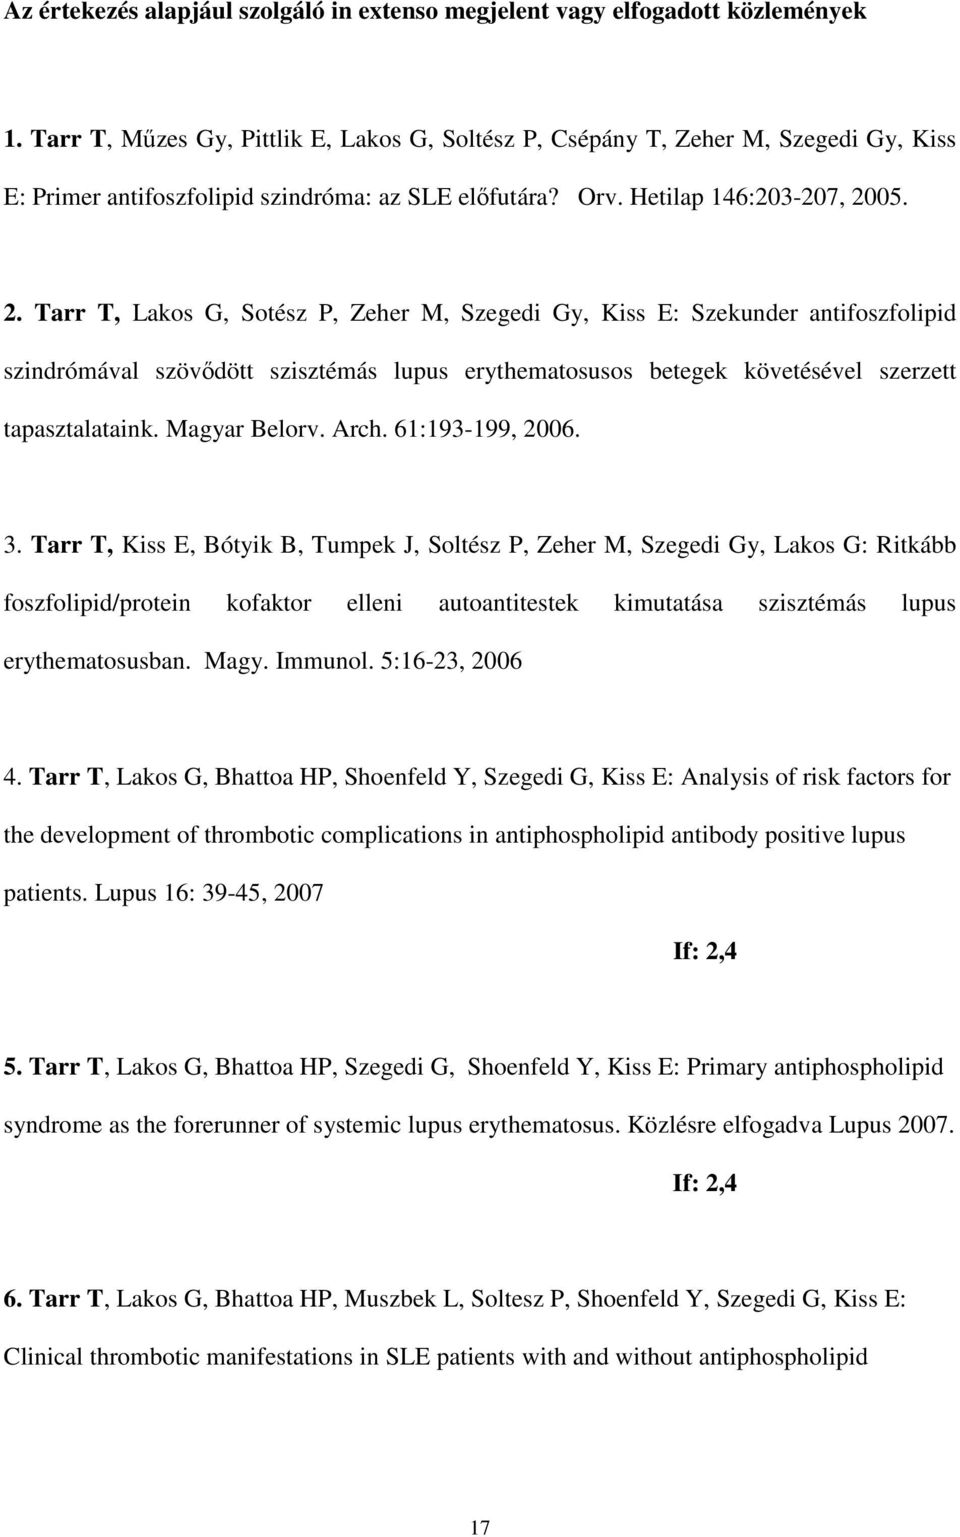 05. 2. Tarr T, Lakos G, Sotész P, Zeher M, Szegedi Gy, Kiss E: Szekunder antifoszfolipid szindrómával szövıdött szisztémás lupus erythematosusos betegek követésével szerzett tapasztalataink.